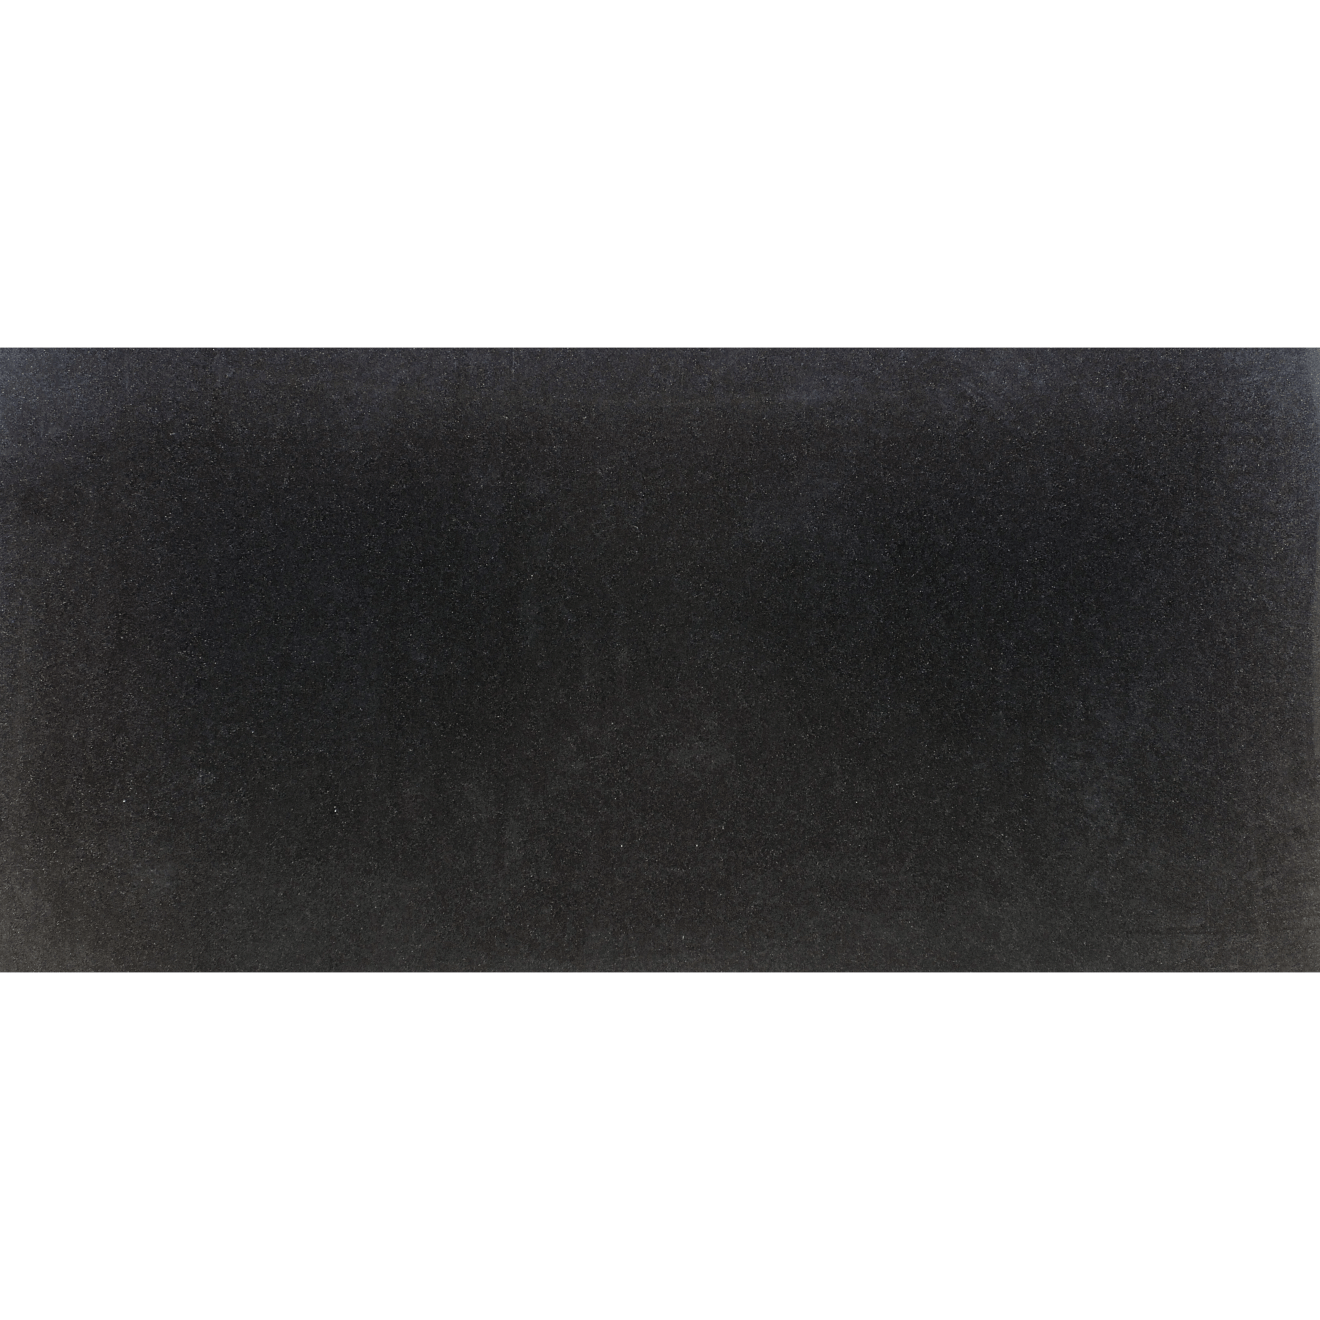 Absolute Black Granite - Granite America